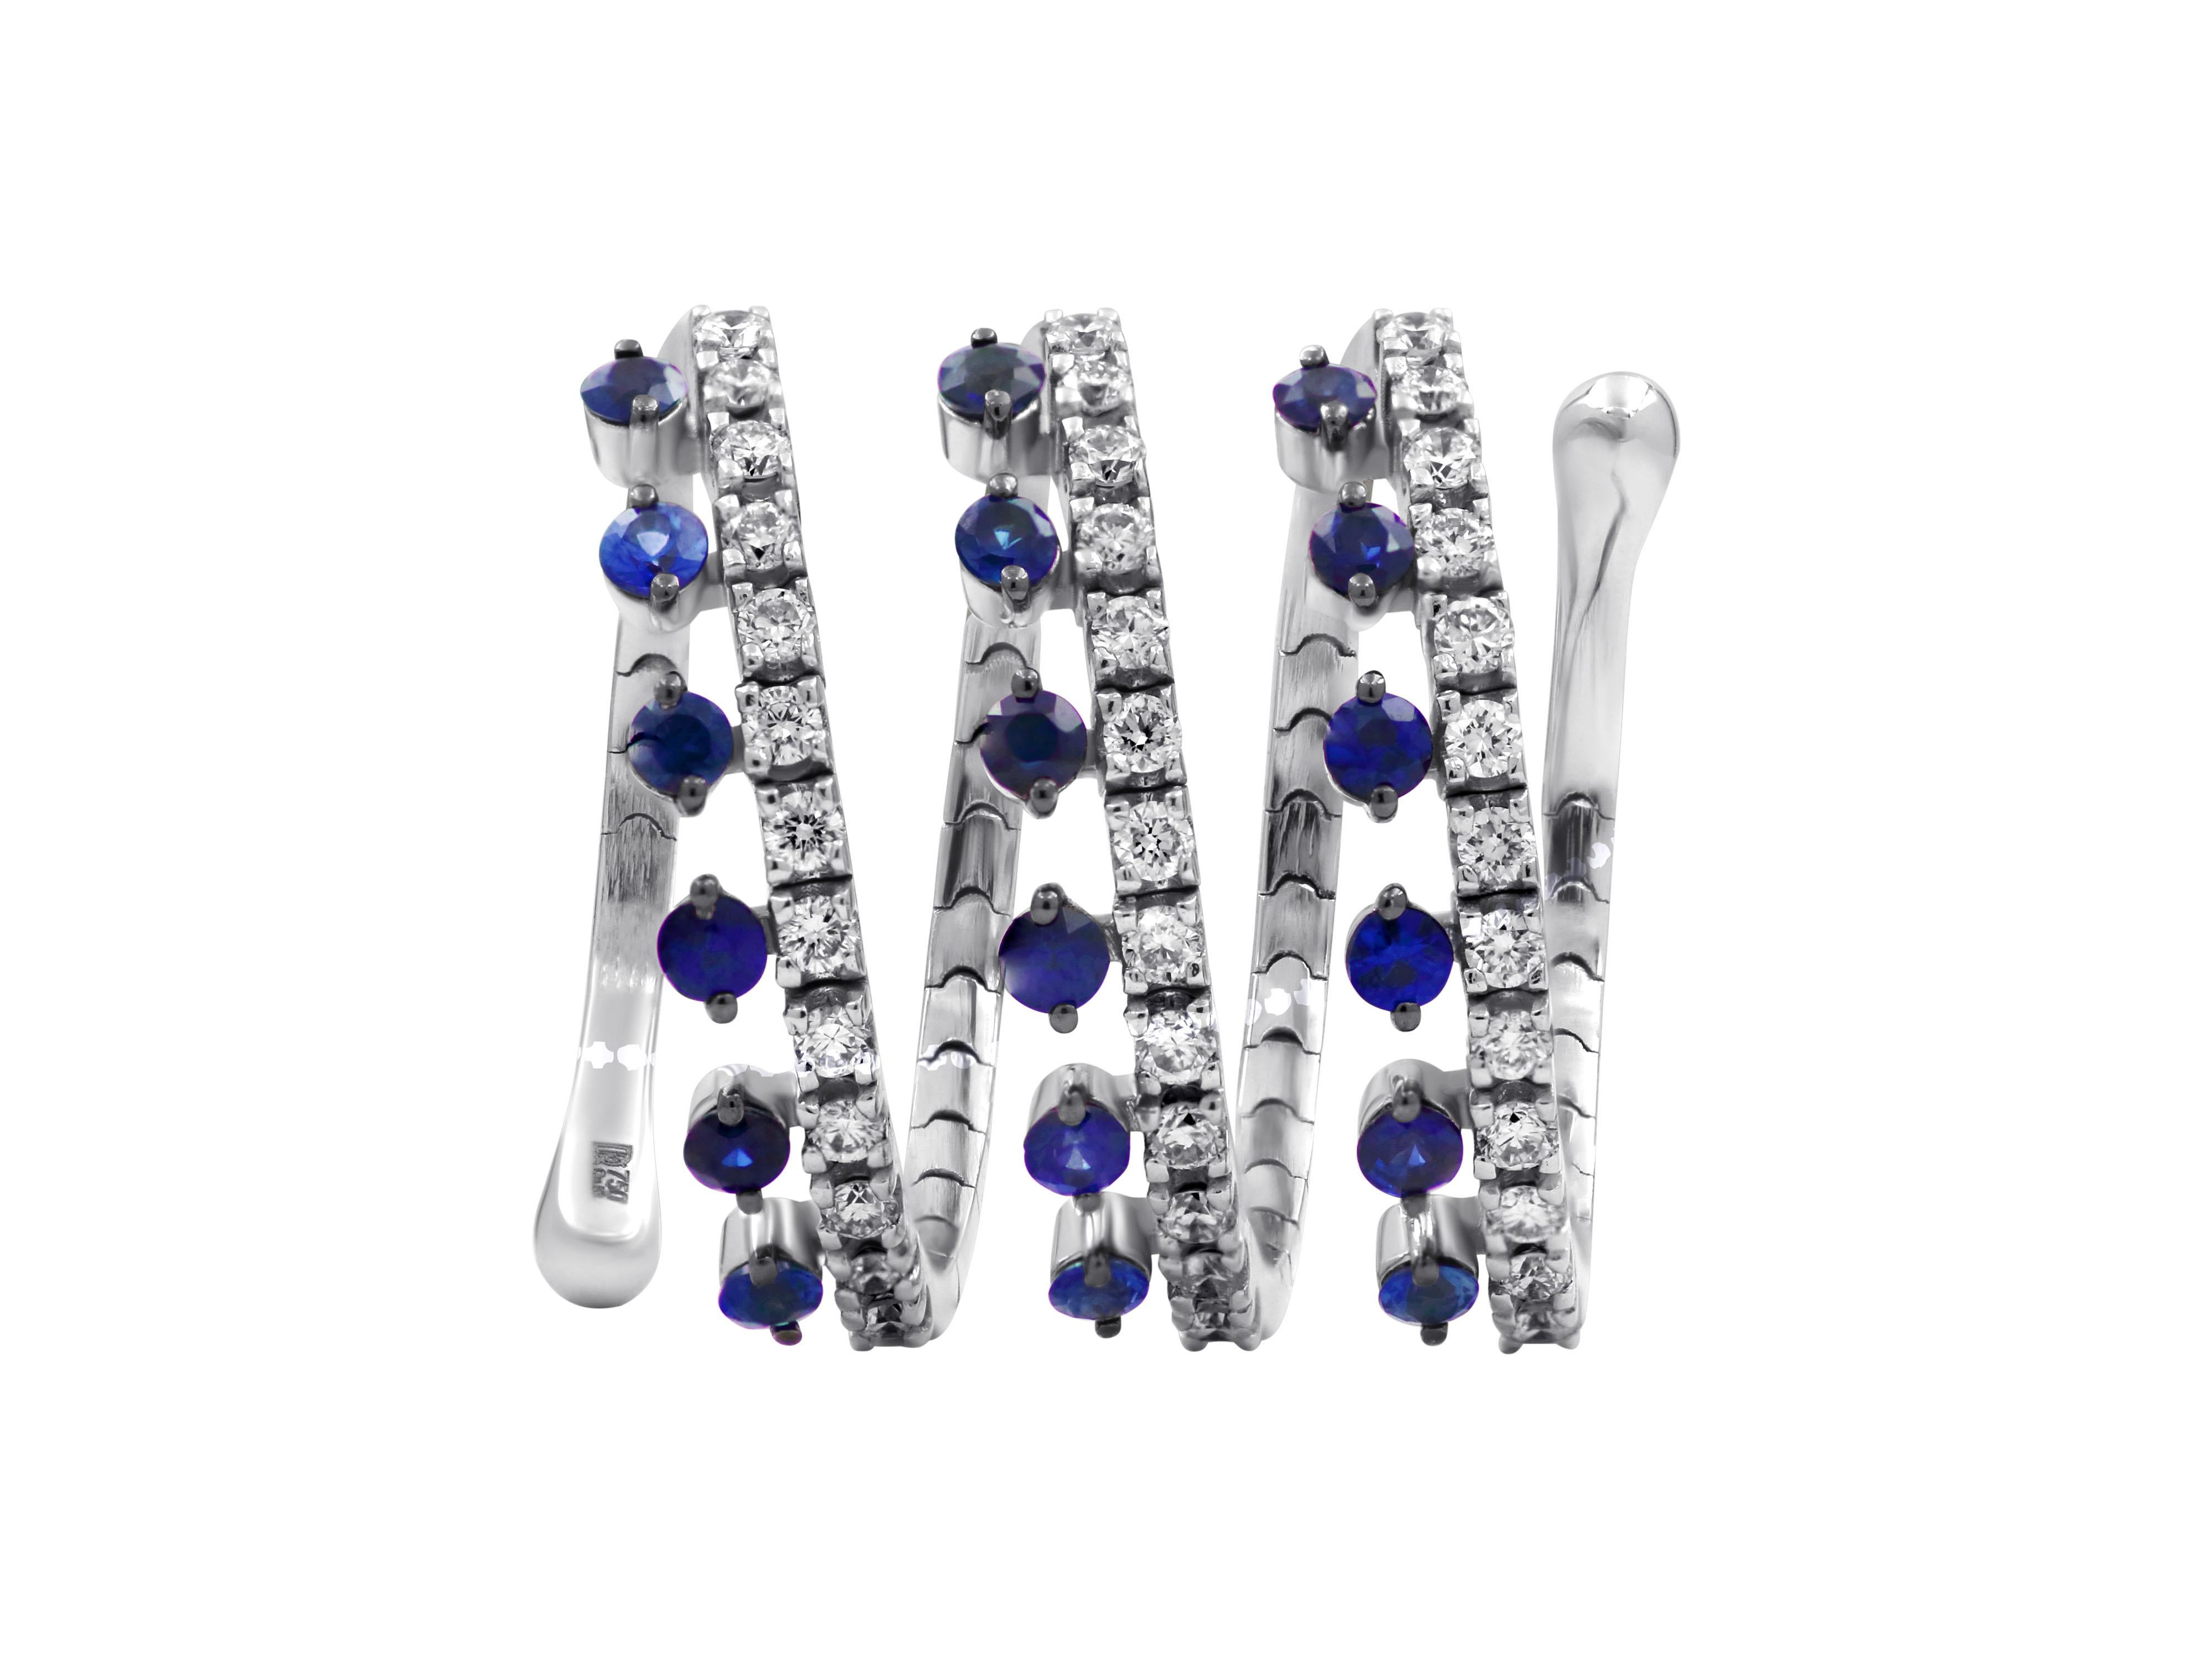 Bague spirale flexible en or blanc 18 carats avec saphirs bleus de 0,74 carats et diamants taille brillant de 0,49 carats.

Longueur : 0,669